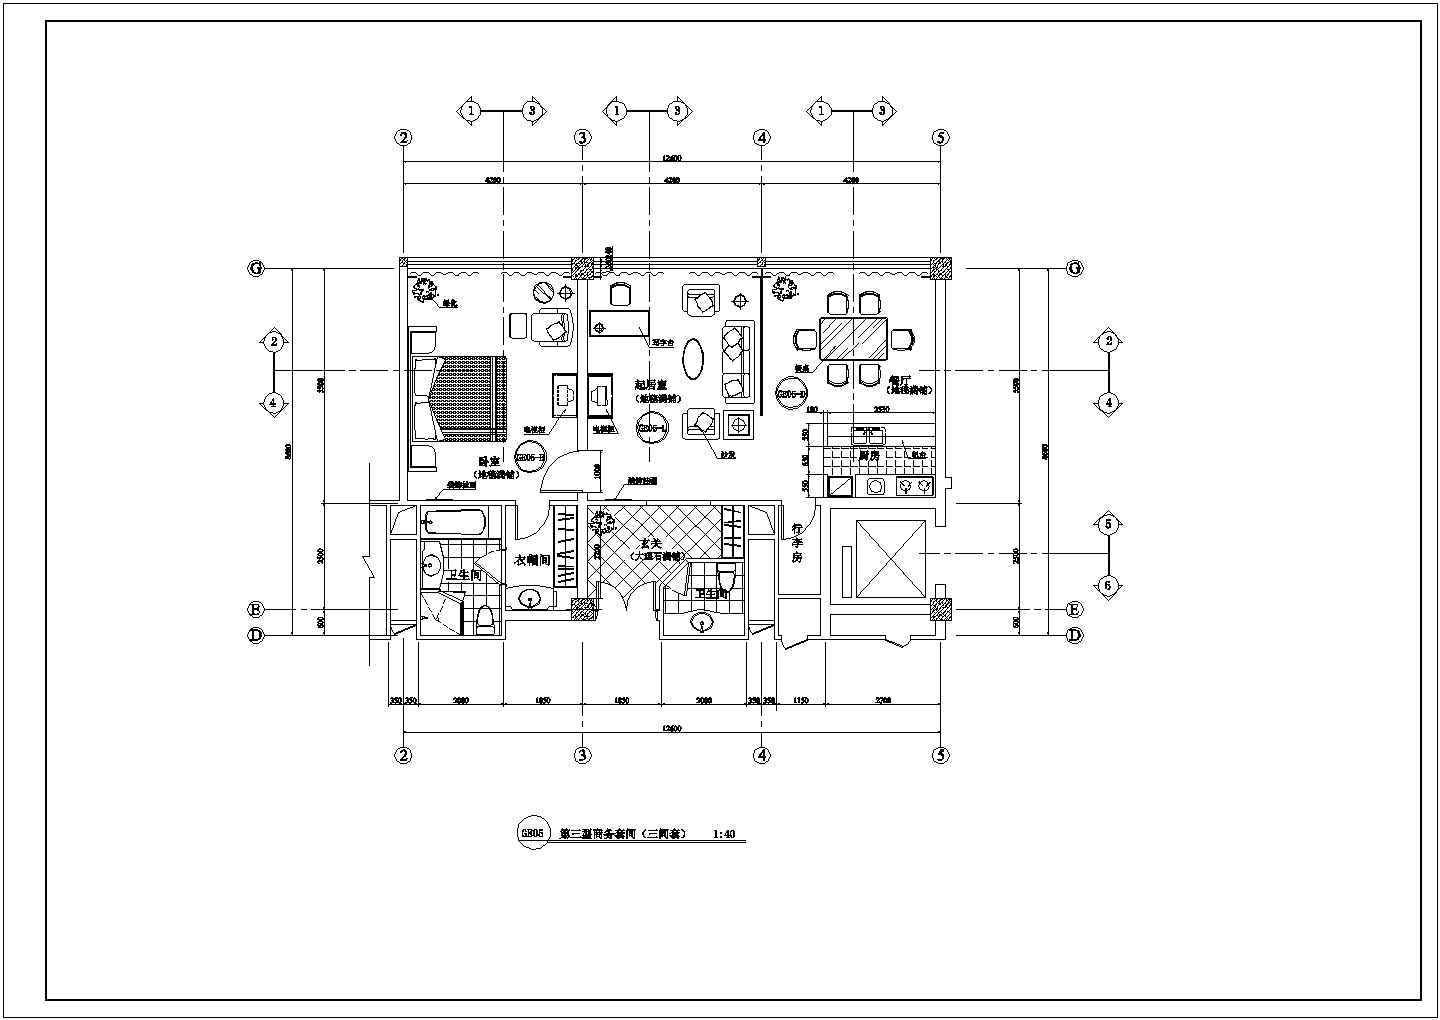 苏州某高档酒店客房全套施工设计方案图纸(含标准间平面图)